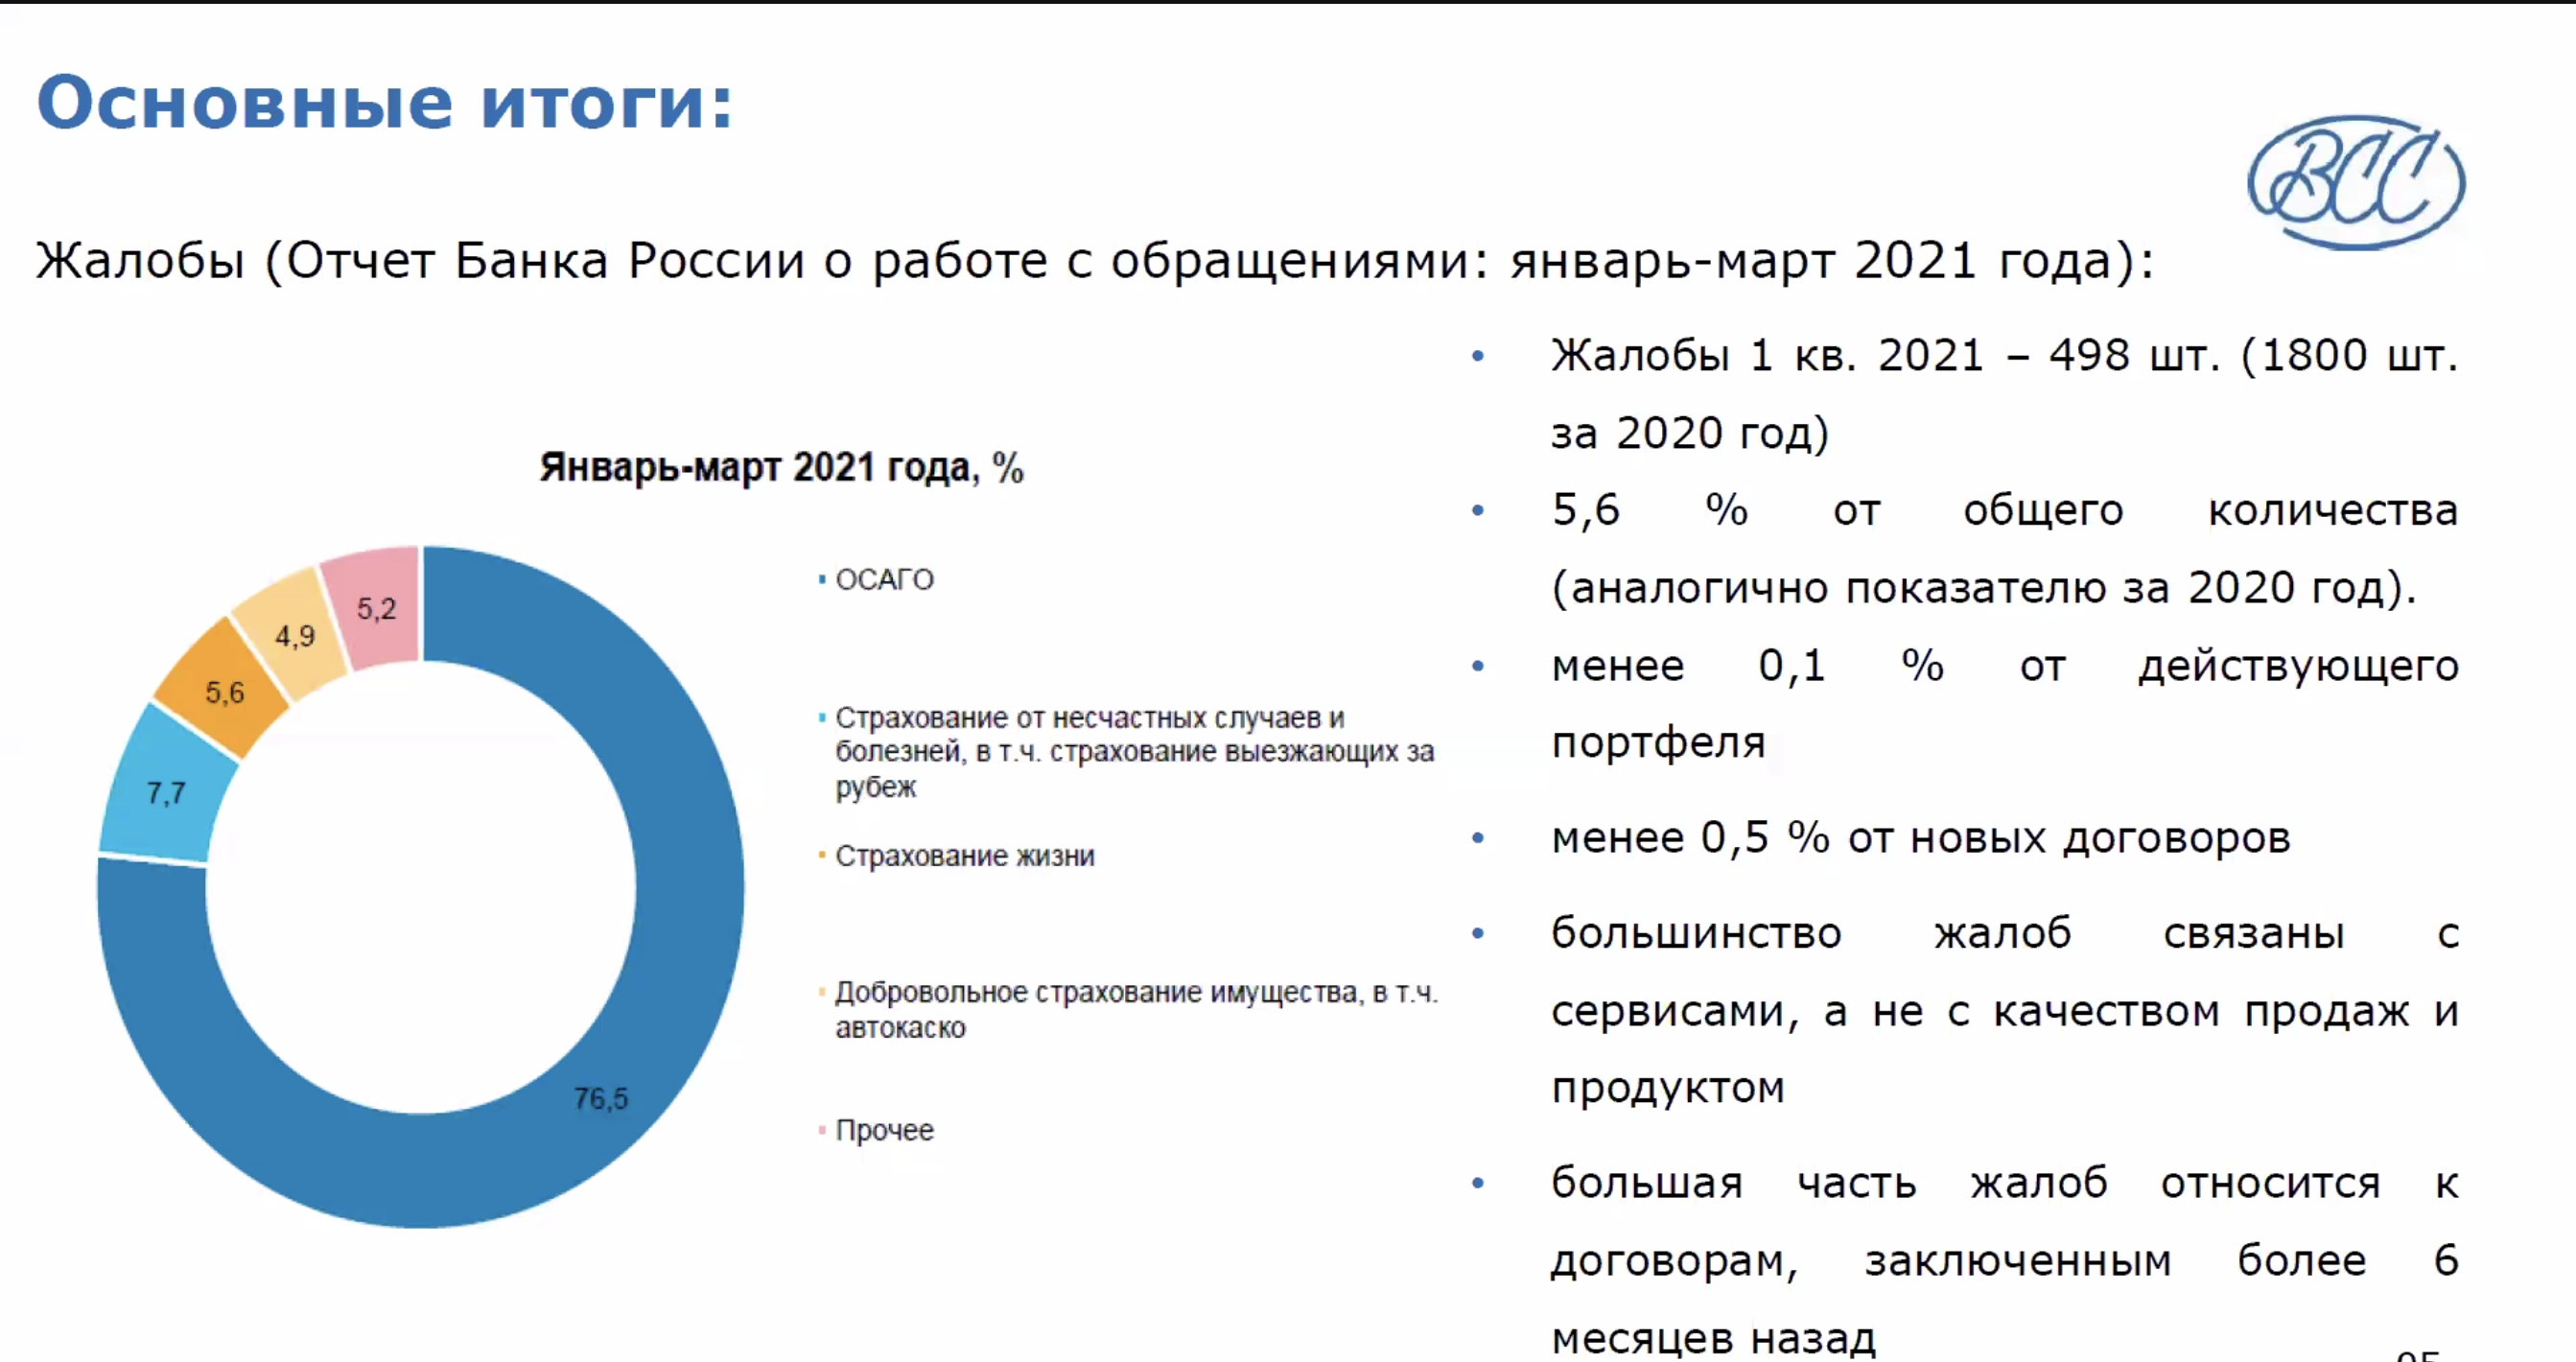 ВСС: что происходит со страхованием жизни в 2021 году